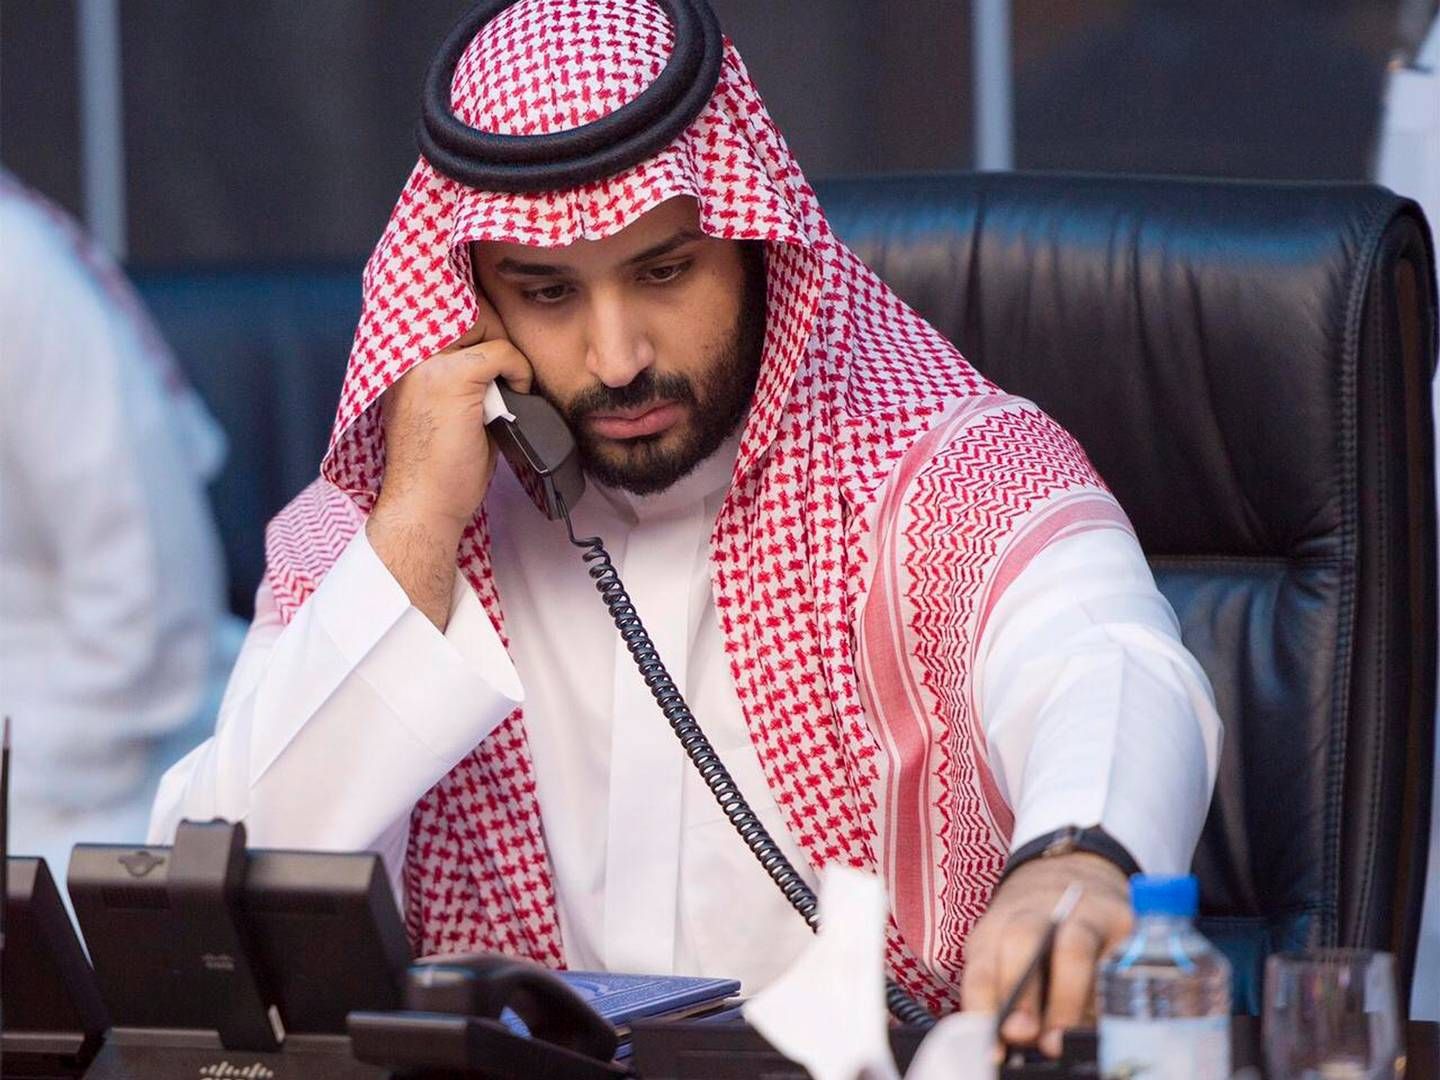 Kronprins Mohammad Bin Salman ser ud til at måtte nedskalere sine ambitioner for ørkenprojektet Neom, der er løbet ind i pengeproblemer. | Foto: Handout/Reuters/Ritzau Scanpix